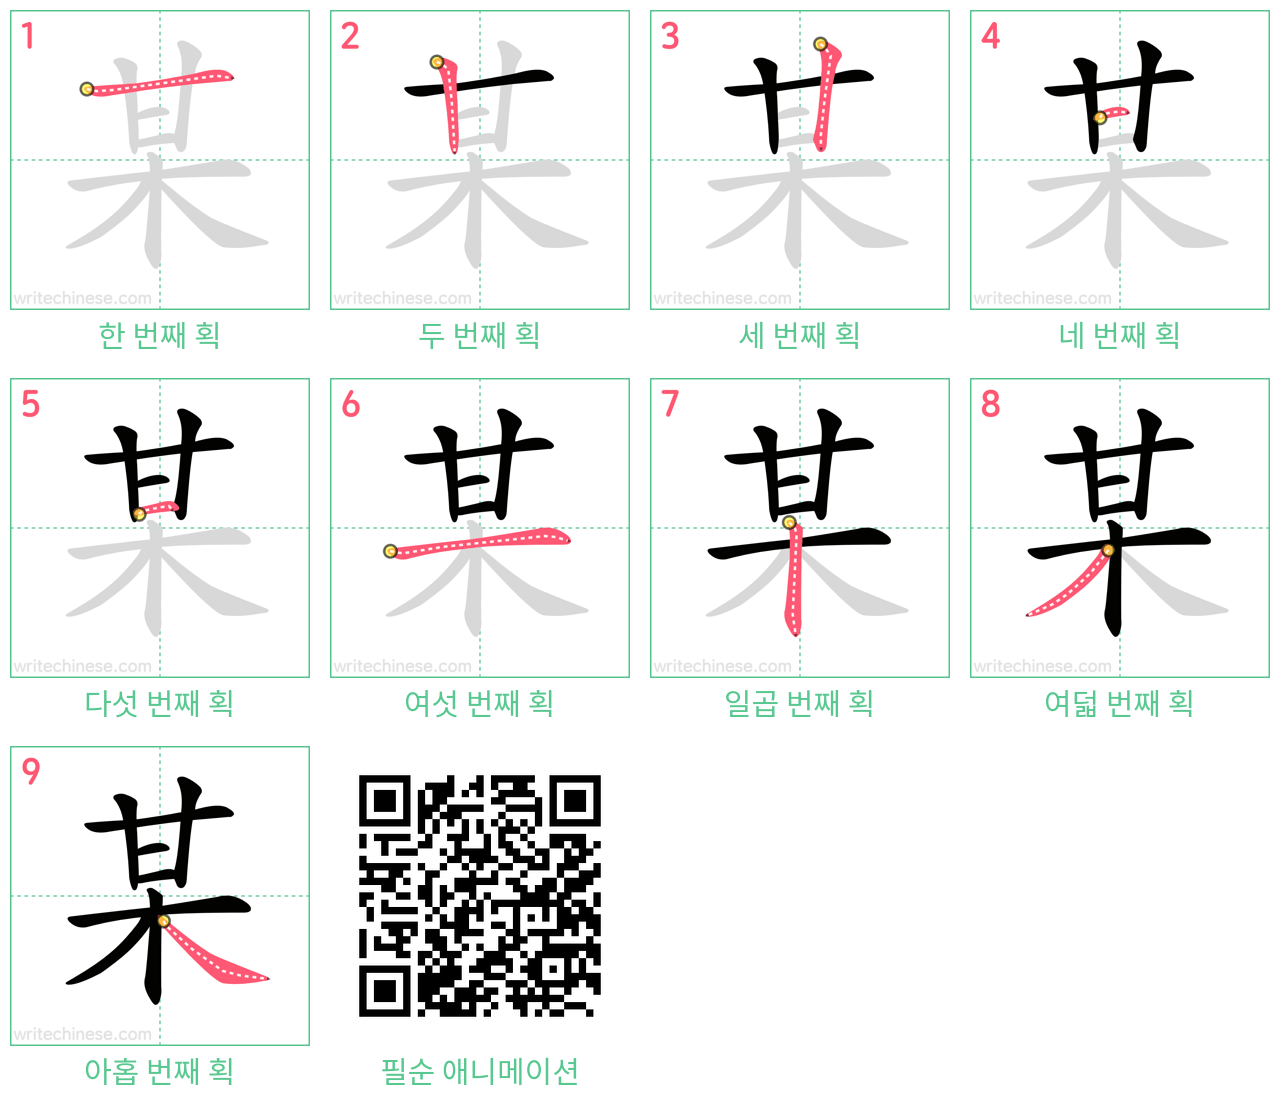 某 step-by-step stroke order diagrams